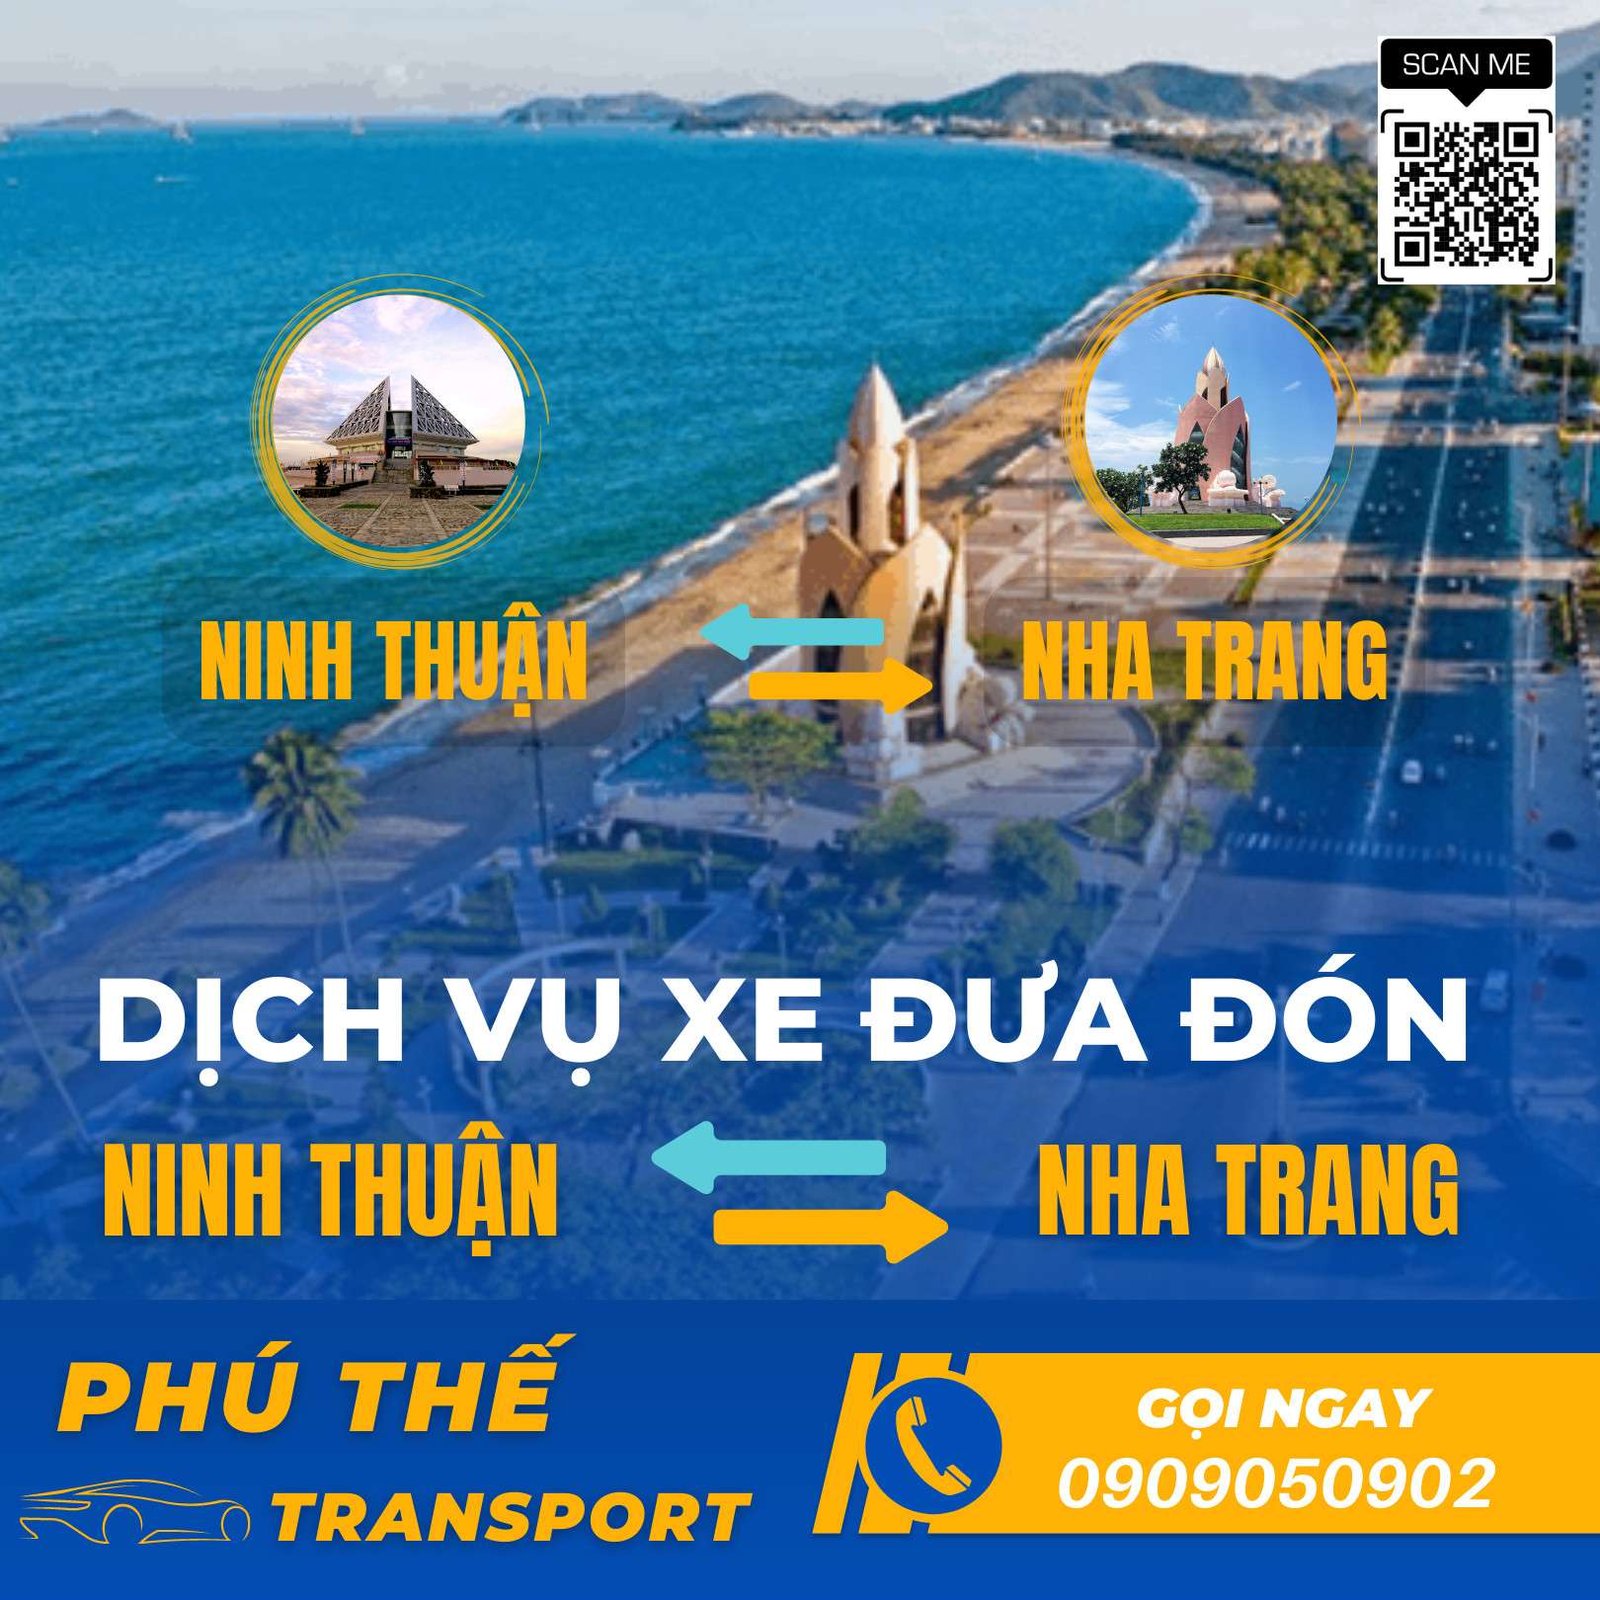 Đặt thuê xe Ninh Thuận đi Nha Trang và ngược lại với chất lượng và giá tốt nhất. Ảnh: AD